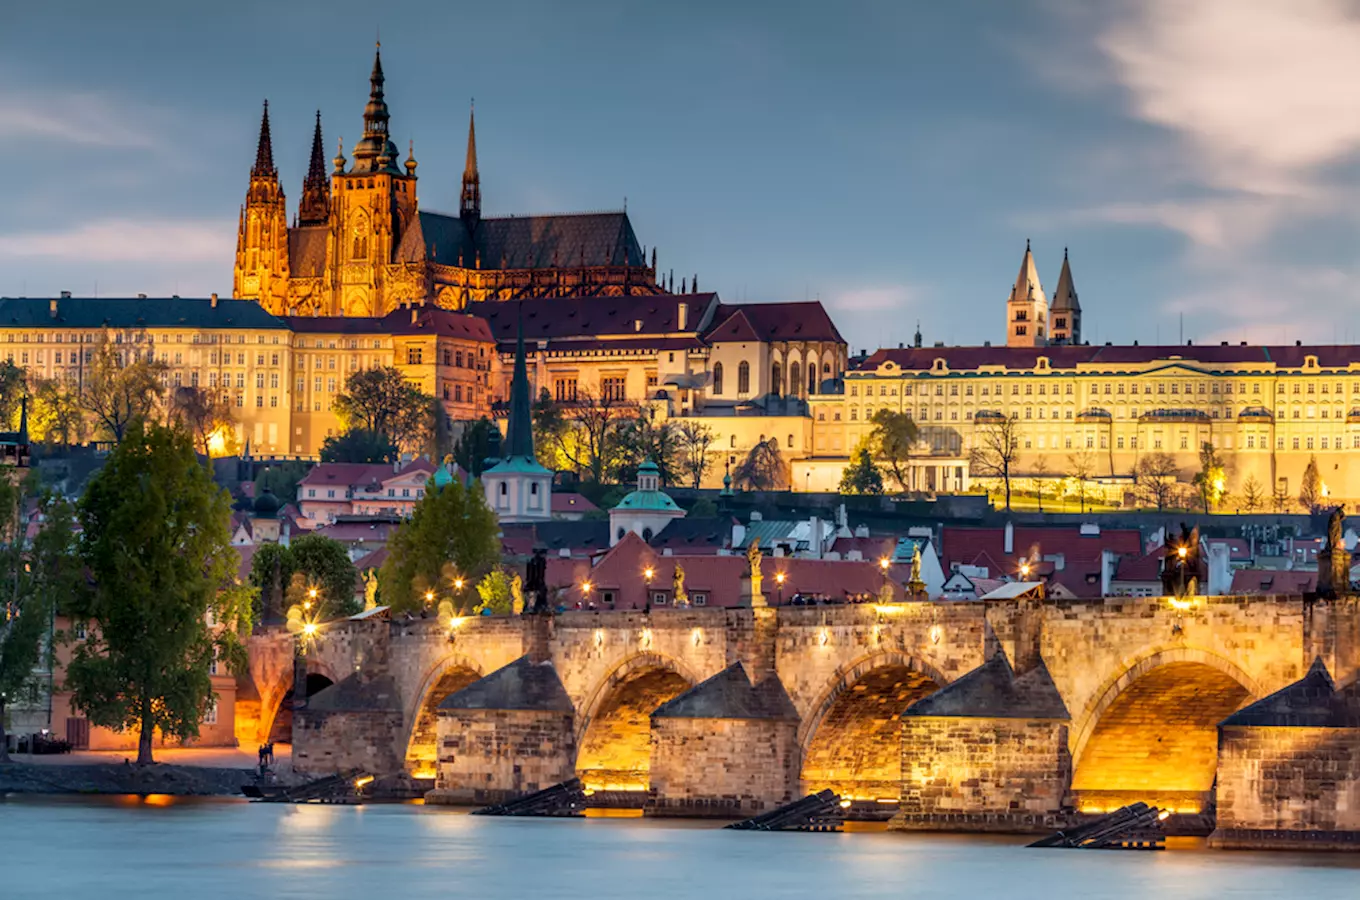 Pražský hrad aneb znáte všechny památky hradního areálu?